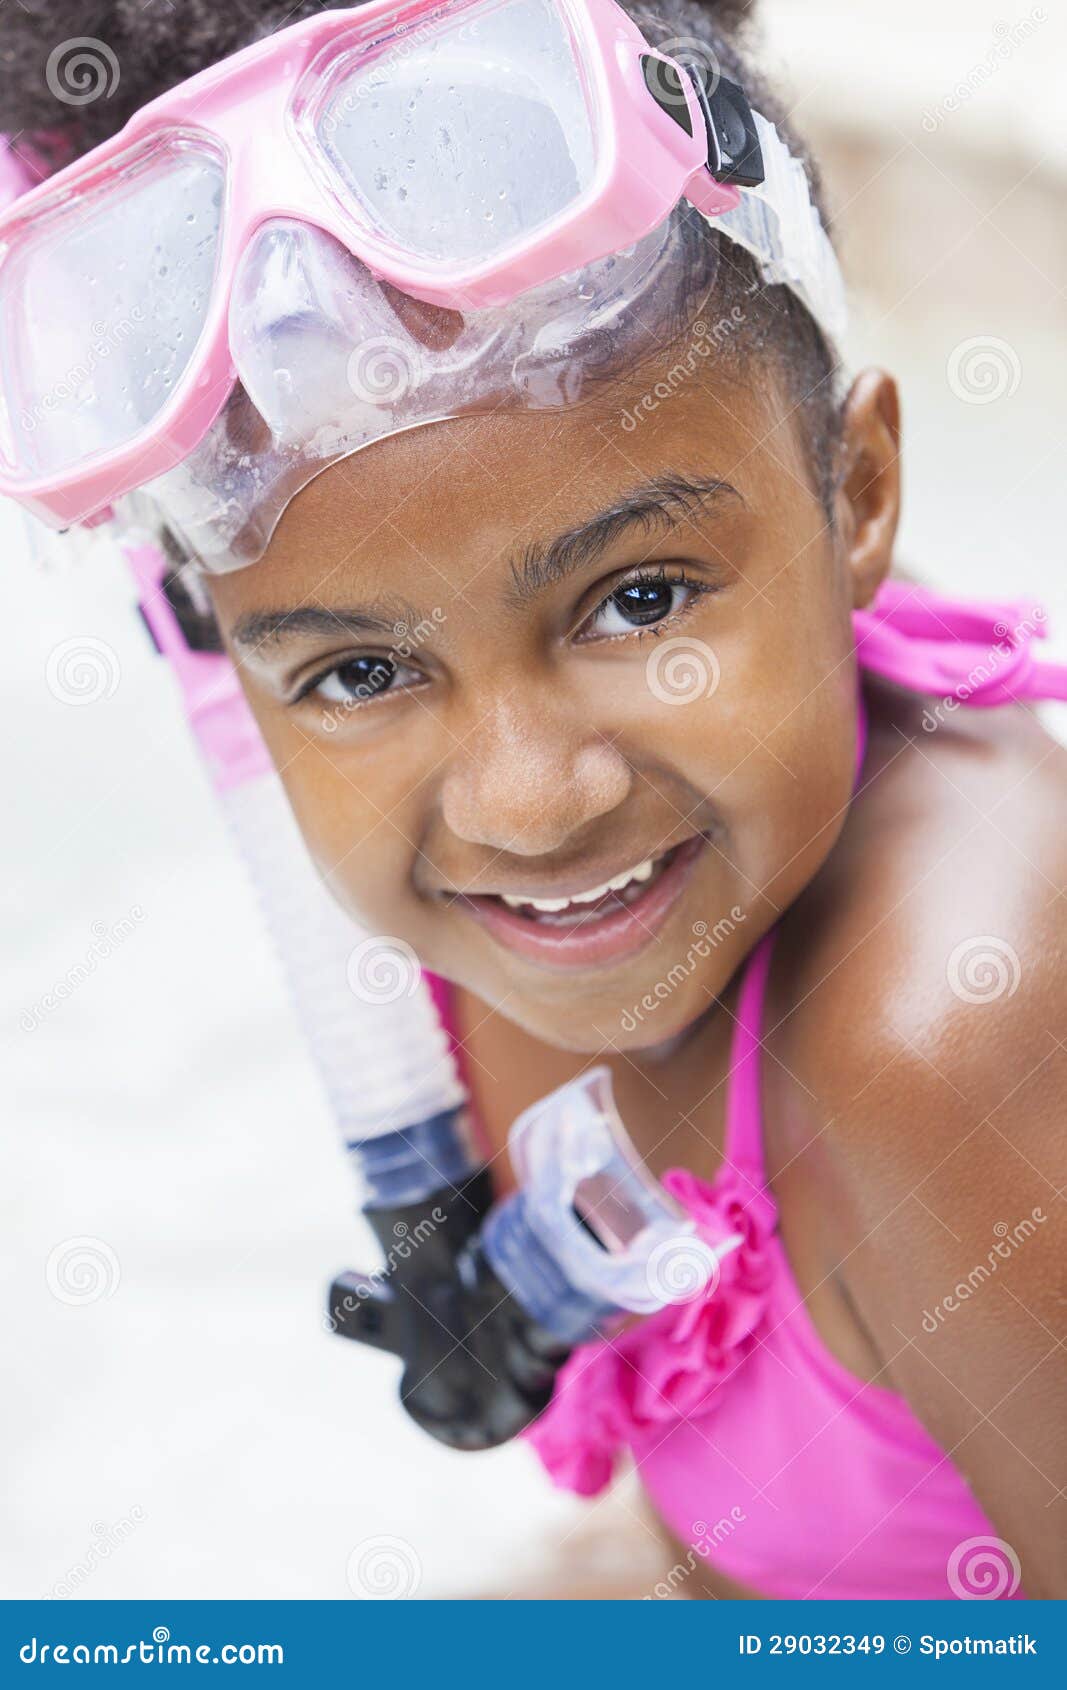 Afroamerikaner-Mädchen-Kind im Swimmingpool mit Schutzbrillen. Ein nettes glückliches junges Afroamerikanermädchenkind, das auf der Seite eines Swimmingpools lächelt u. trägt rosa Schutzbrillen sich entspannt